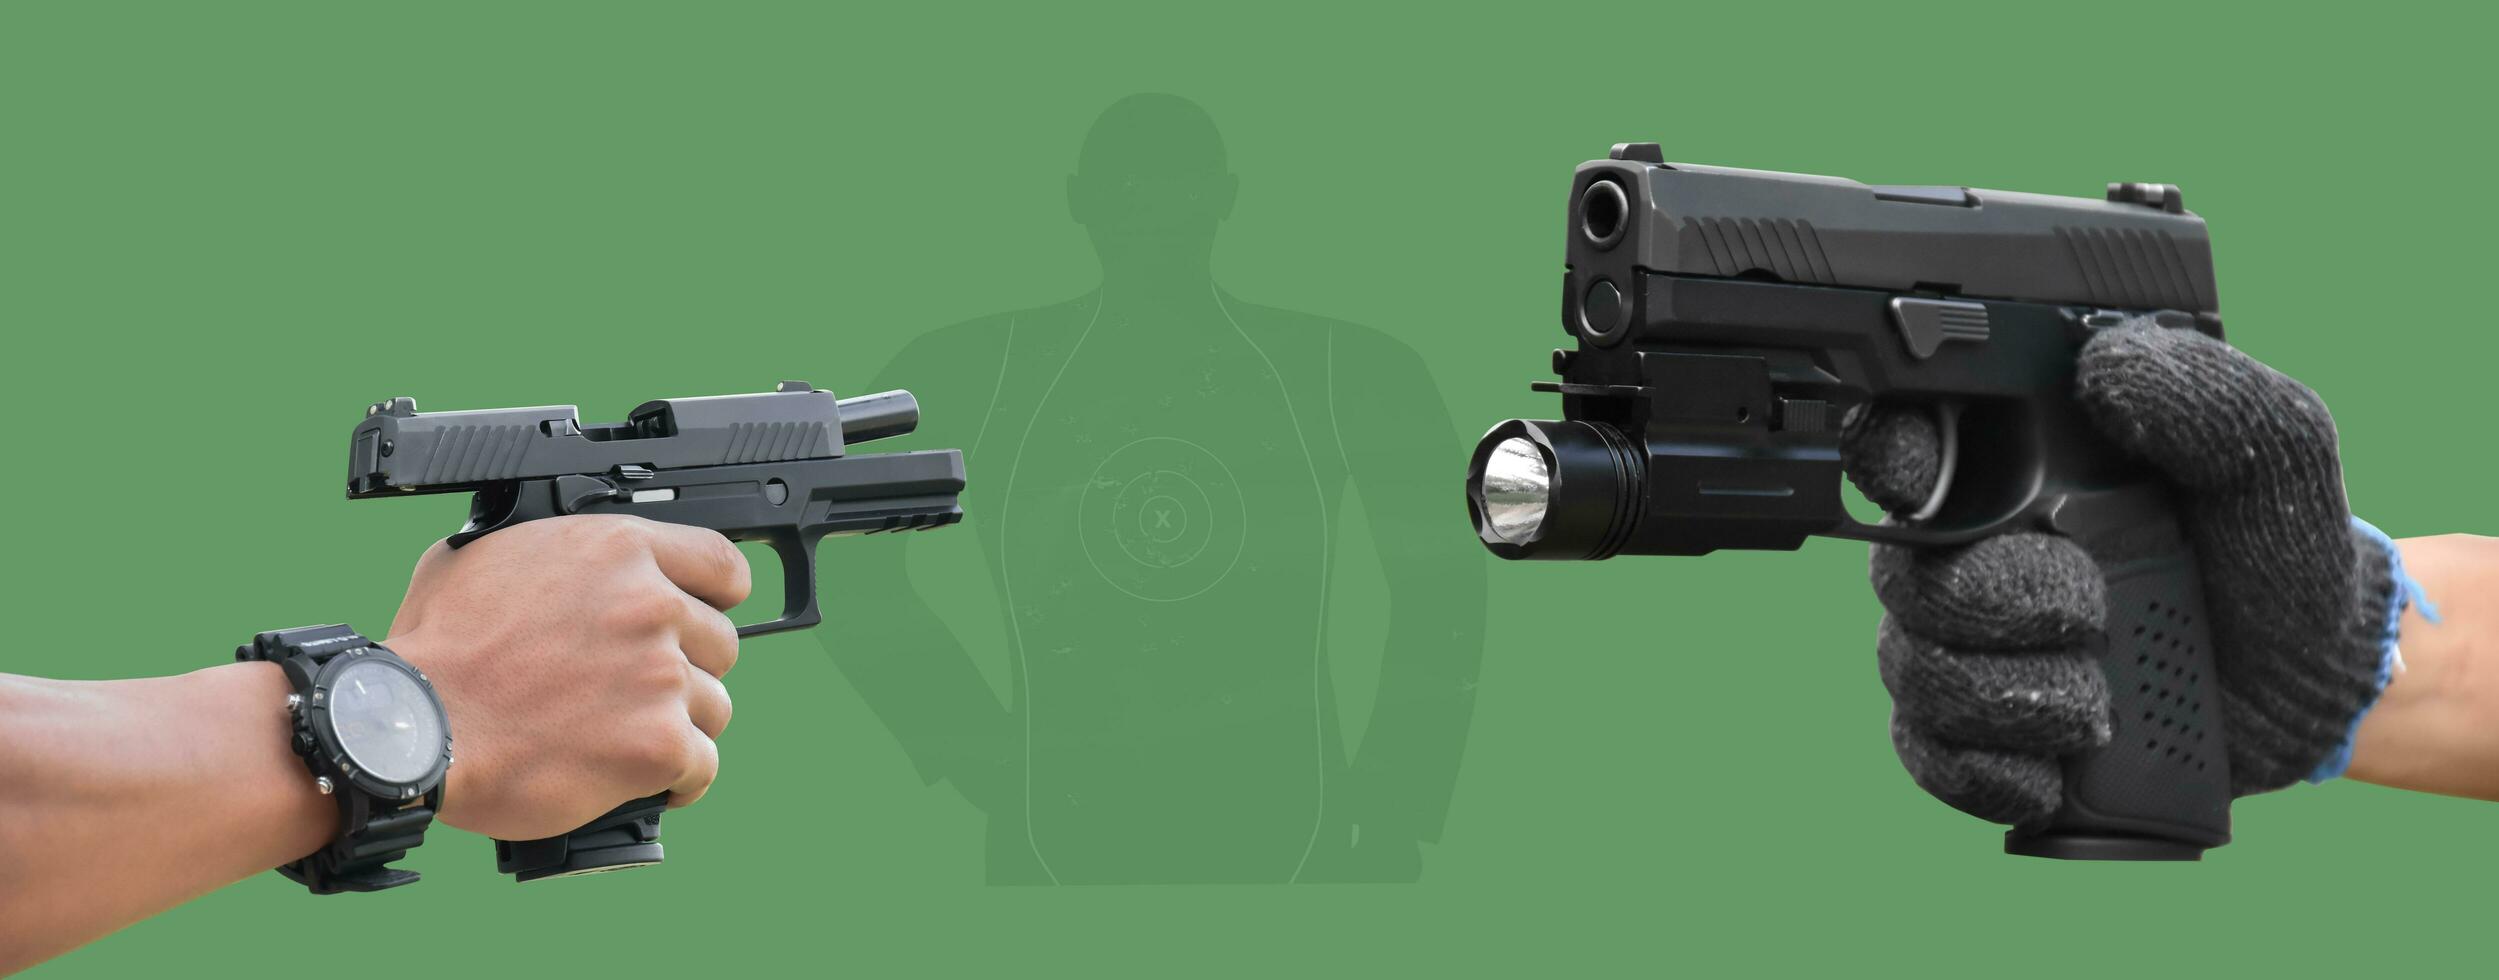 isolé 9 mm pistolet pistolet en portant dans droite main de pistolet tireur avec coupure chemins. photo